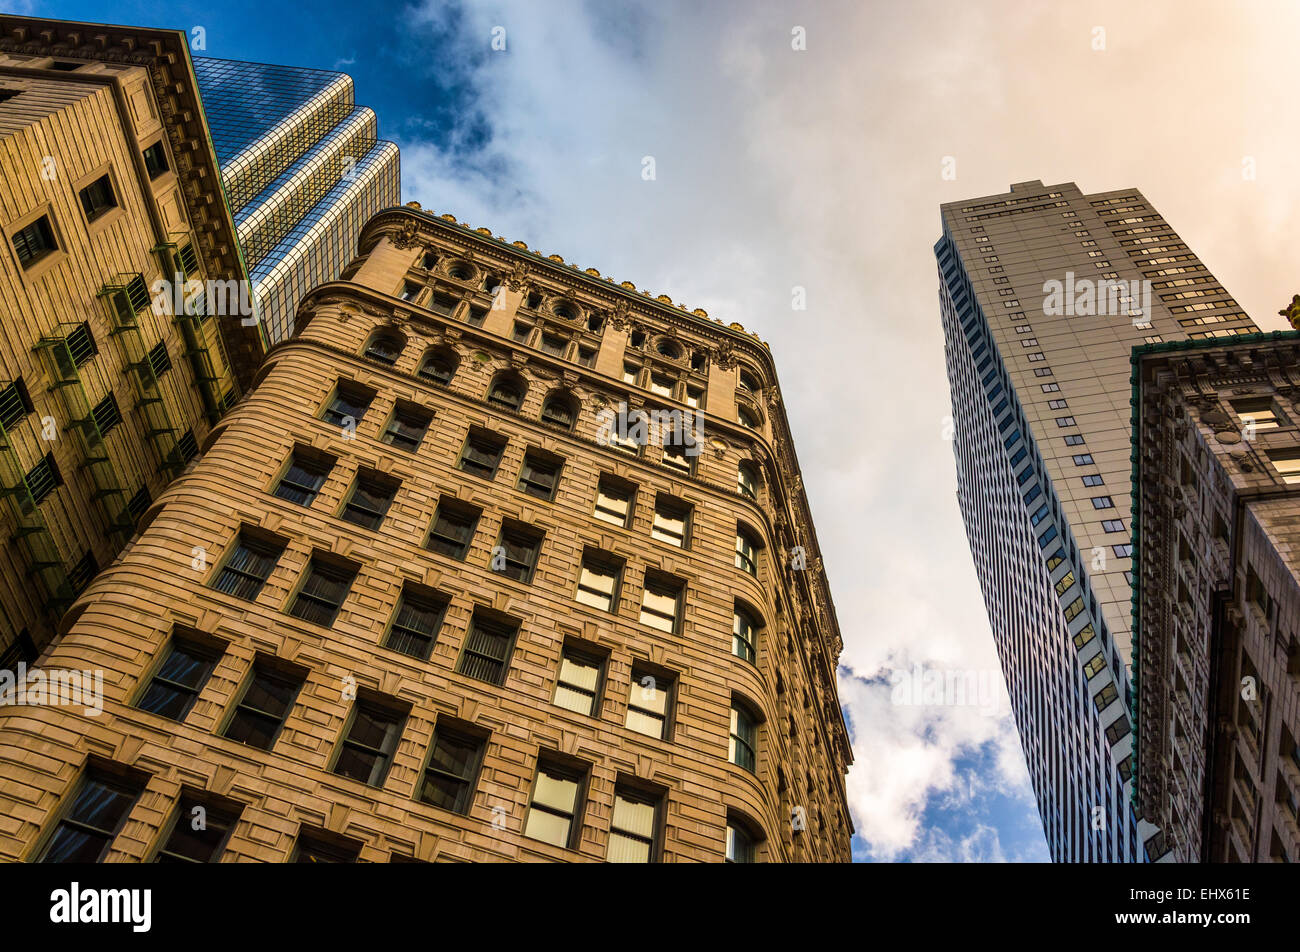 Blickte zu modernen Gebäuden und alte Architektur in Boston, Massachusetts. Stockfoto